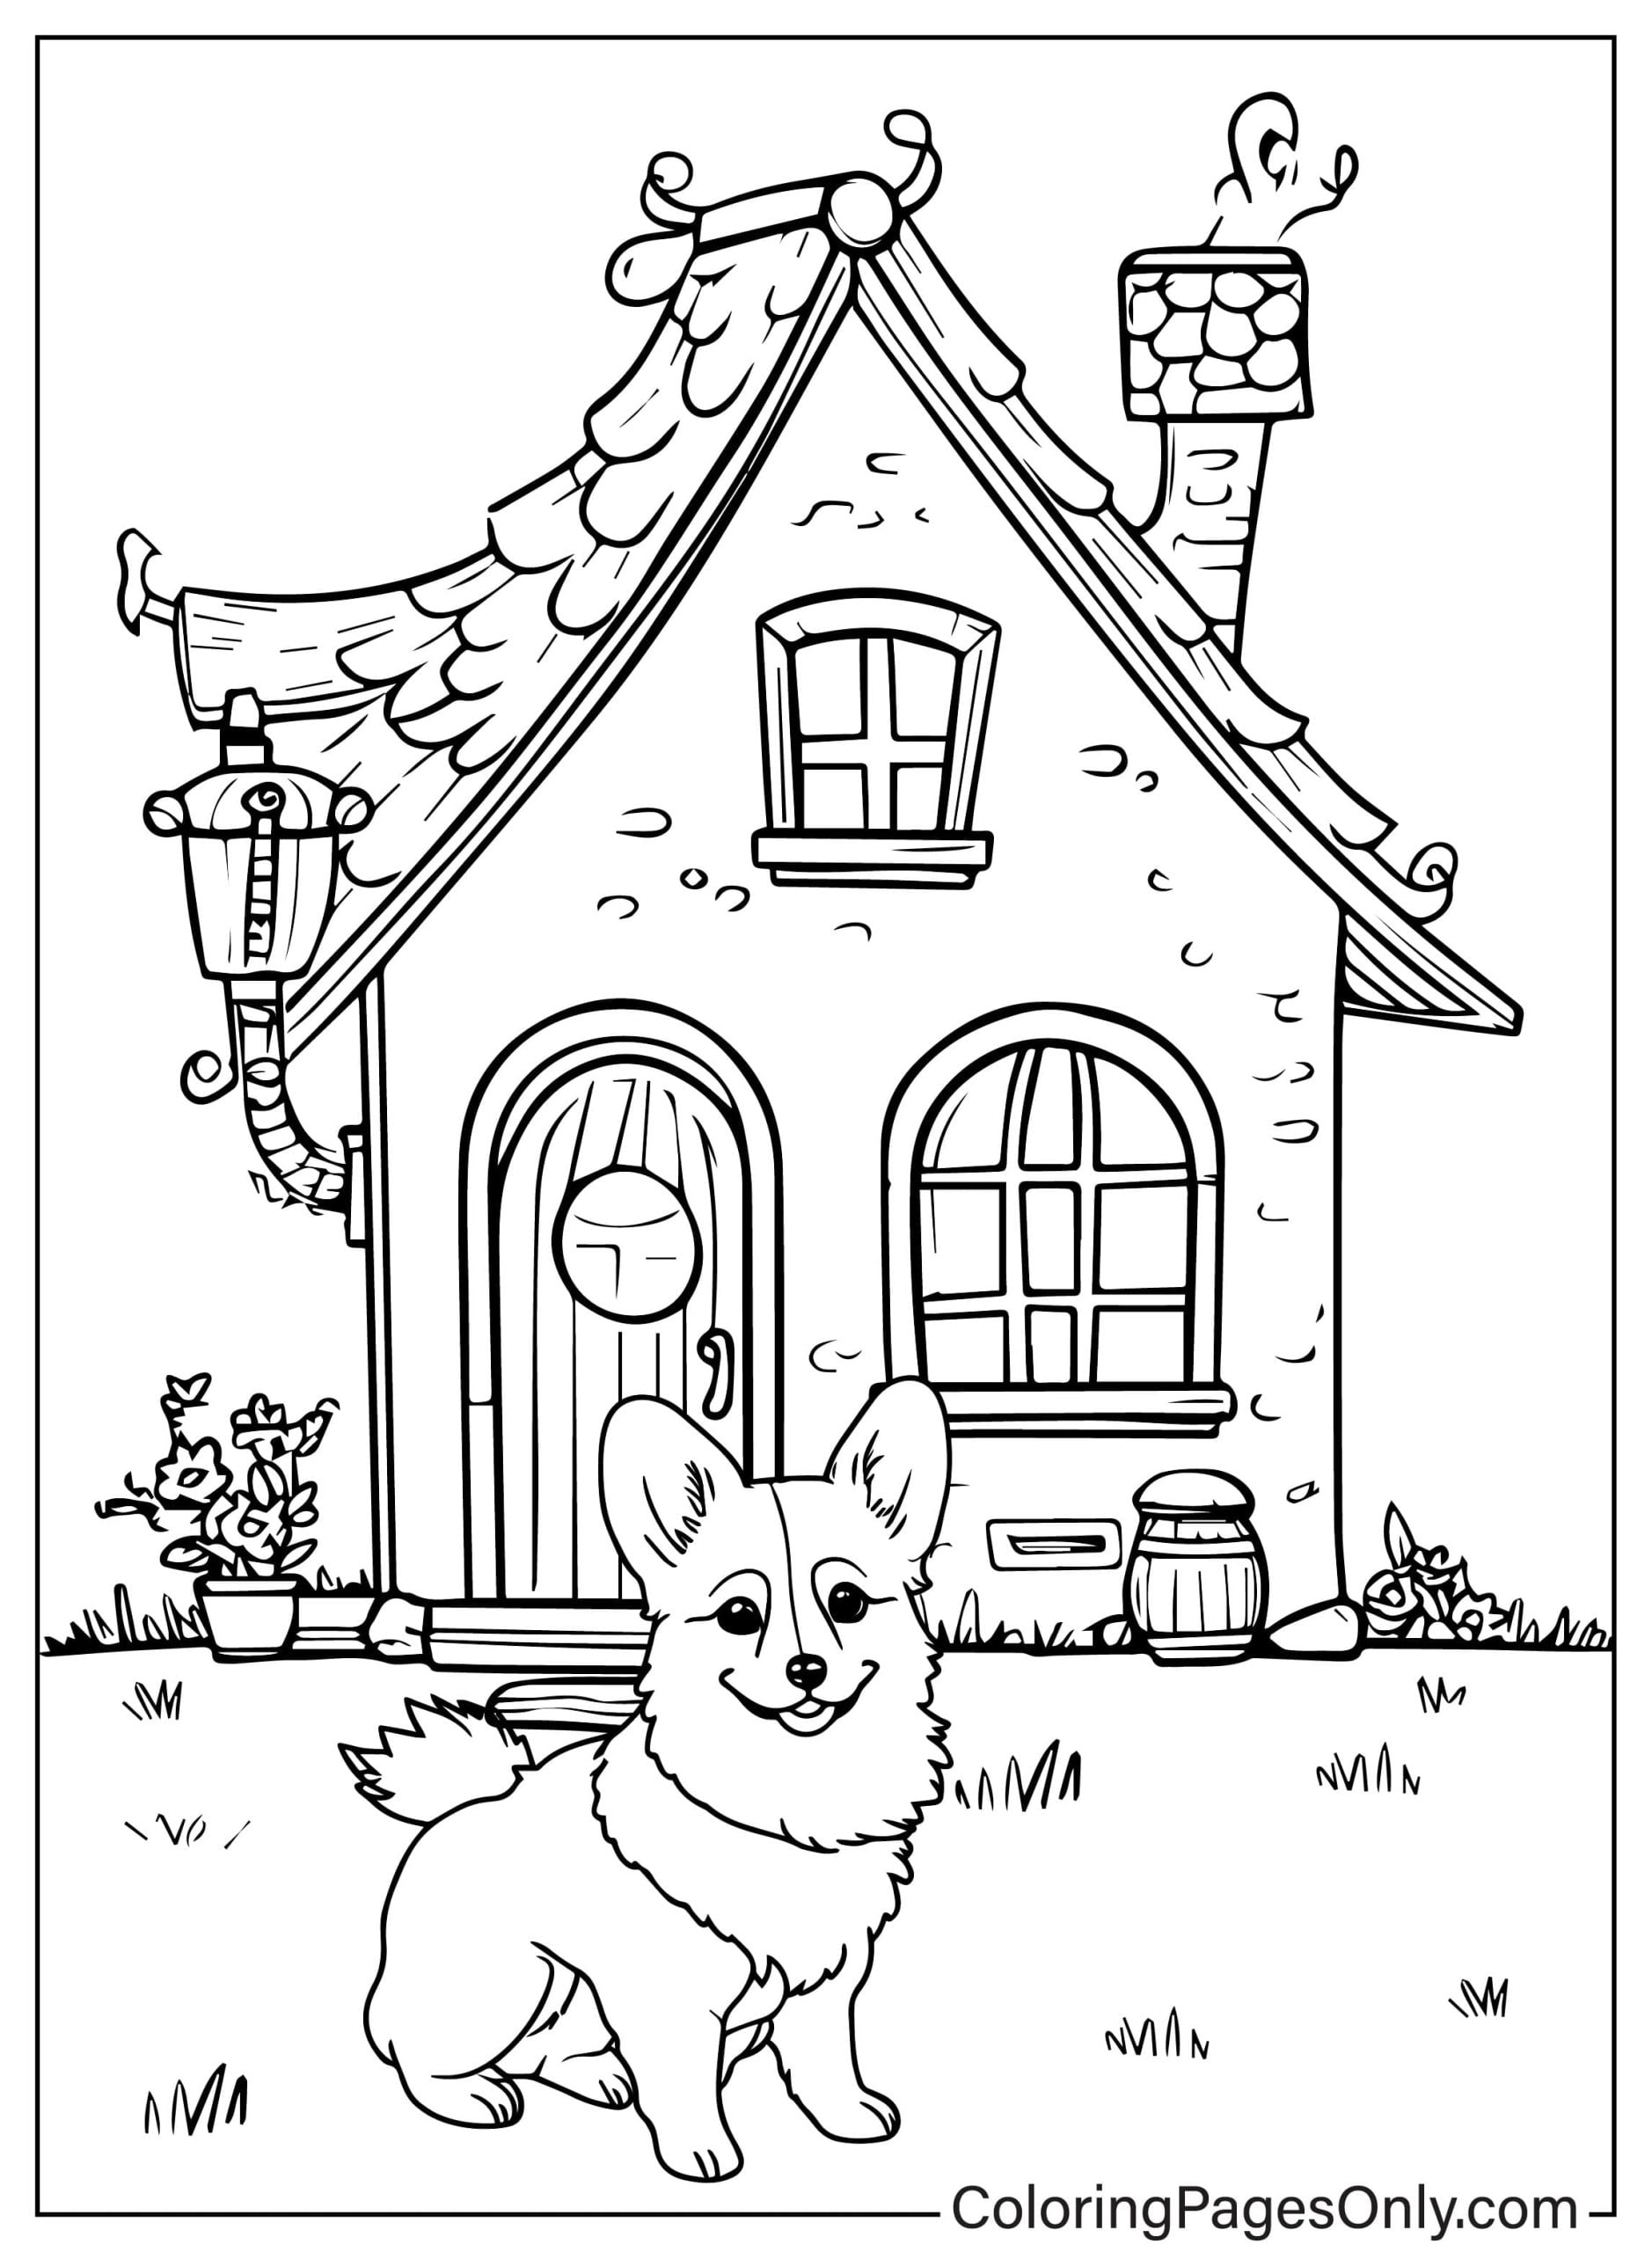 Kleine Corgi-hond zit gelukkig en bewaakt het huis tegen Corgi